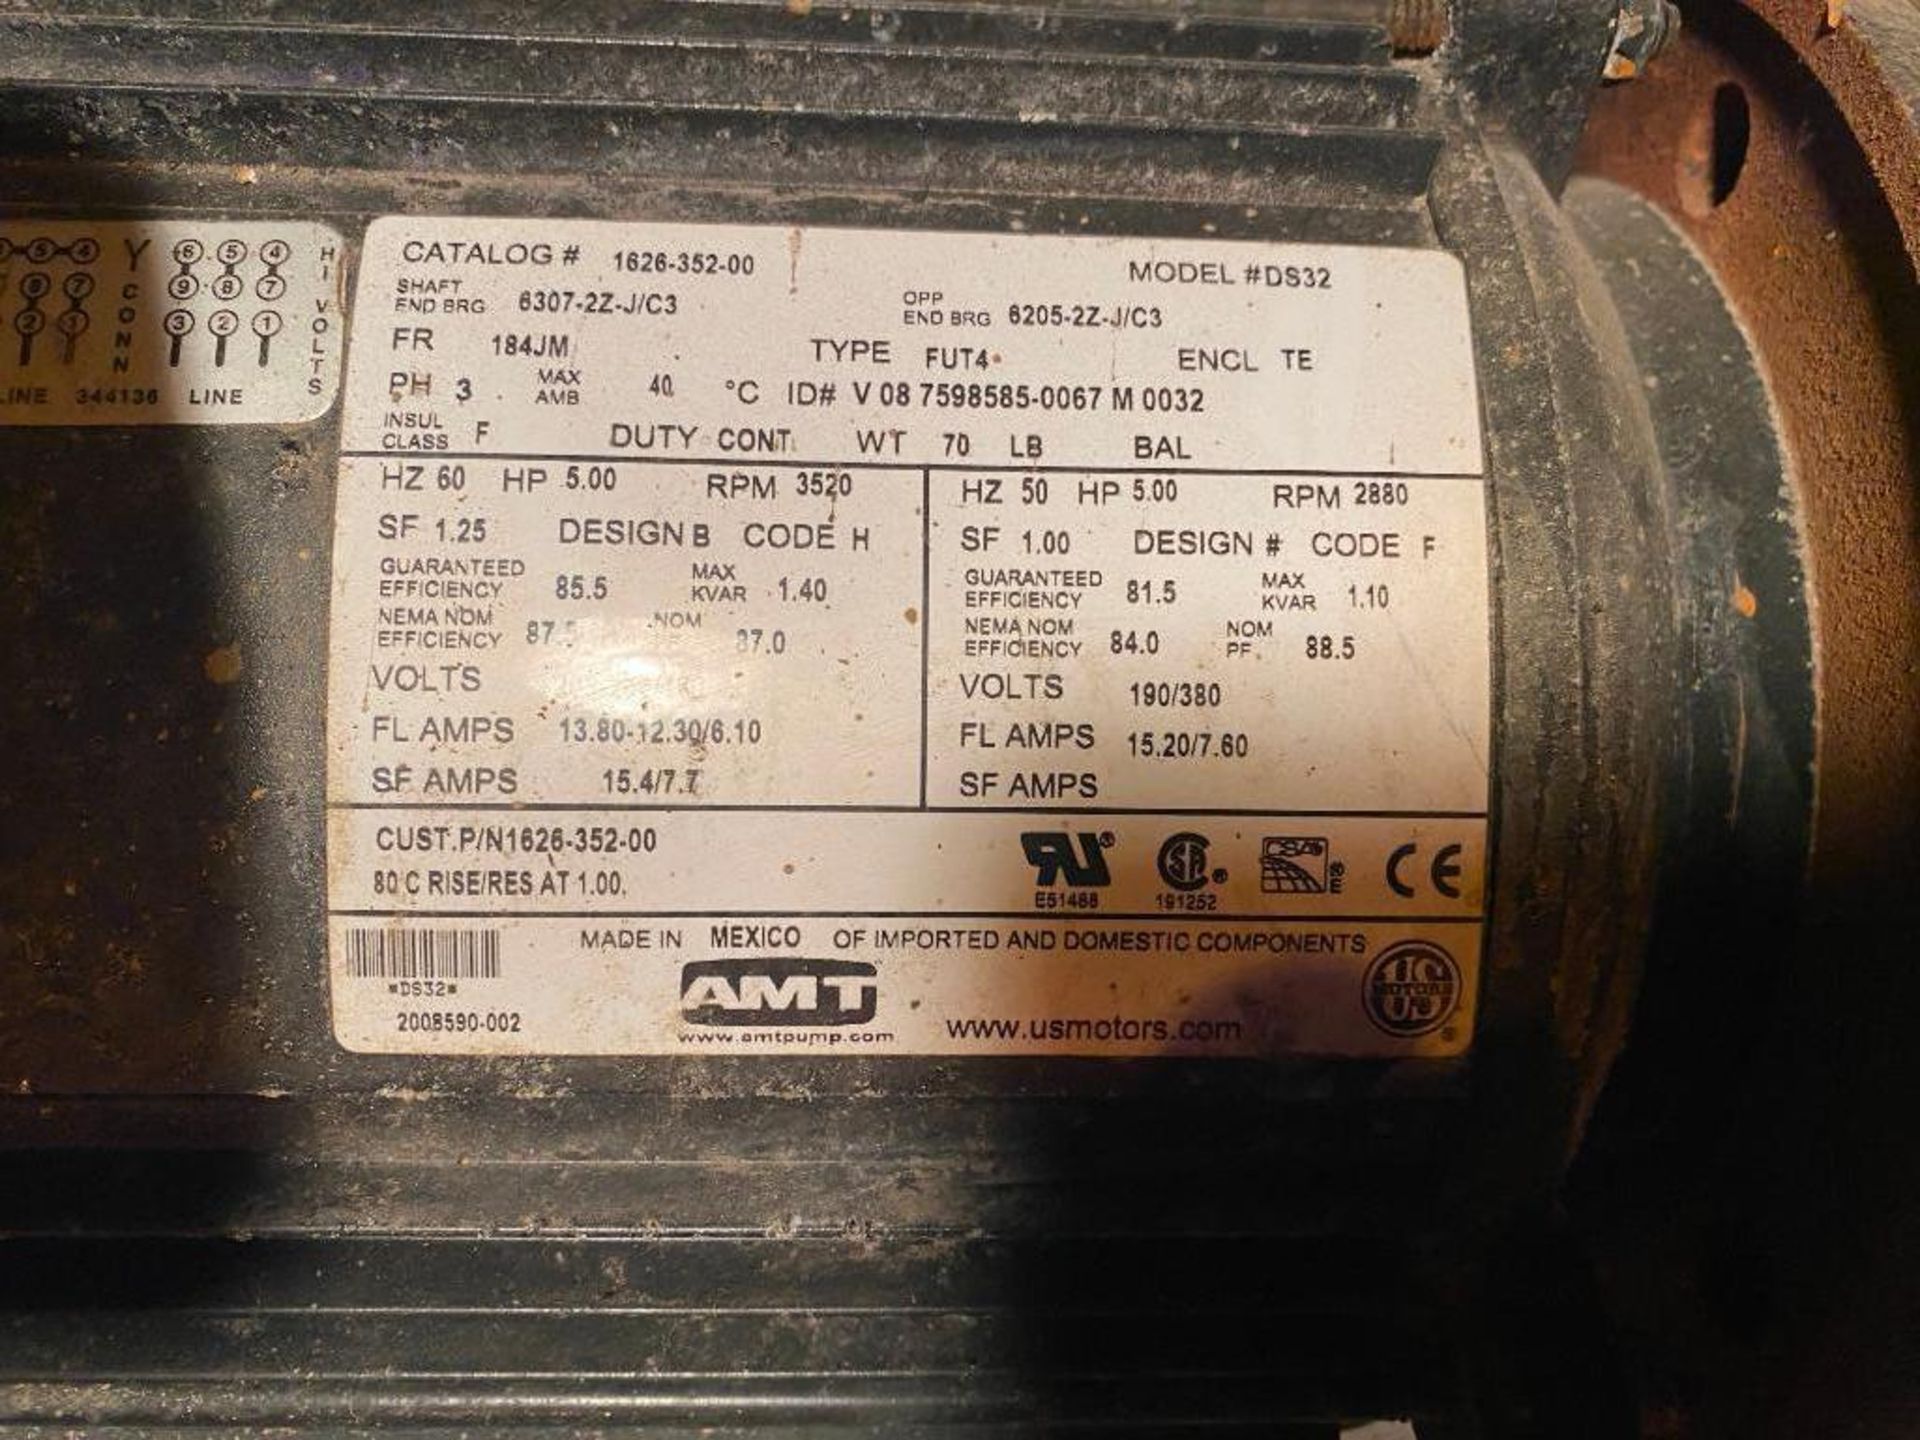 AMT 5 HP Electric Motor w/ Pump, 208-230/460 V, 60 Hz, 190/380 V, 50 Hz, 3520/2880 RPM, Model DS32 - Image 2 of 2